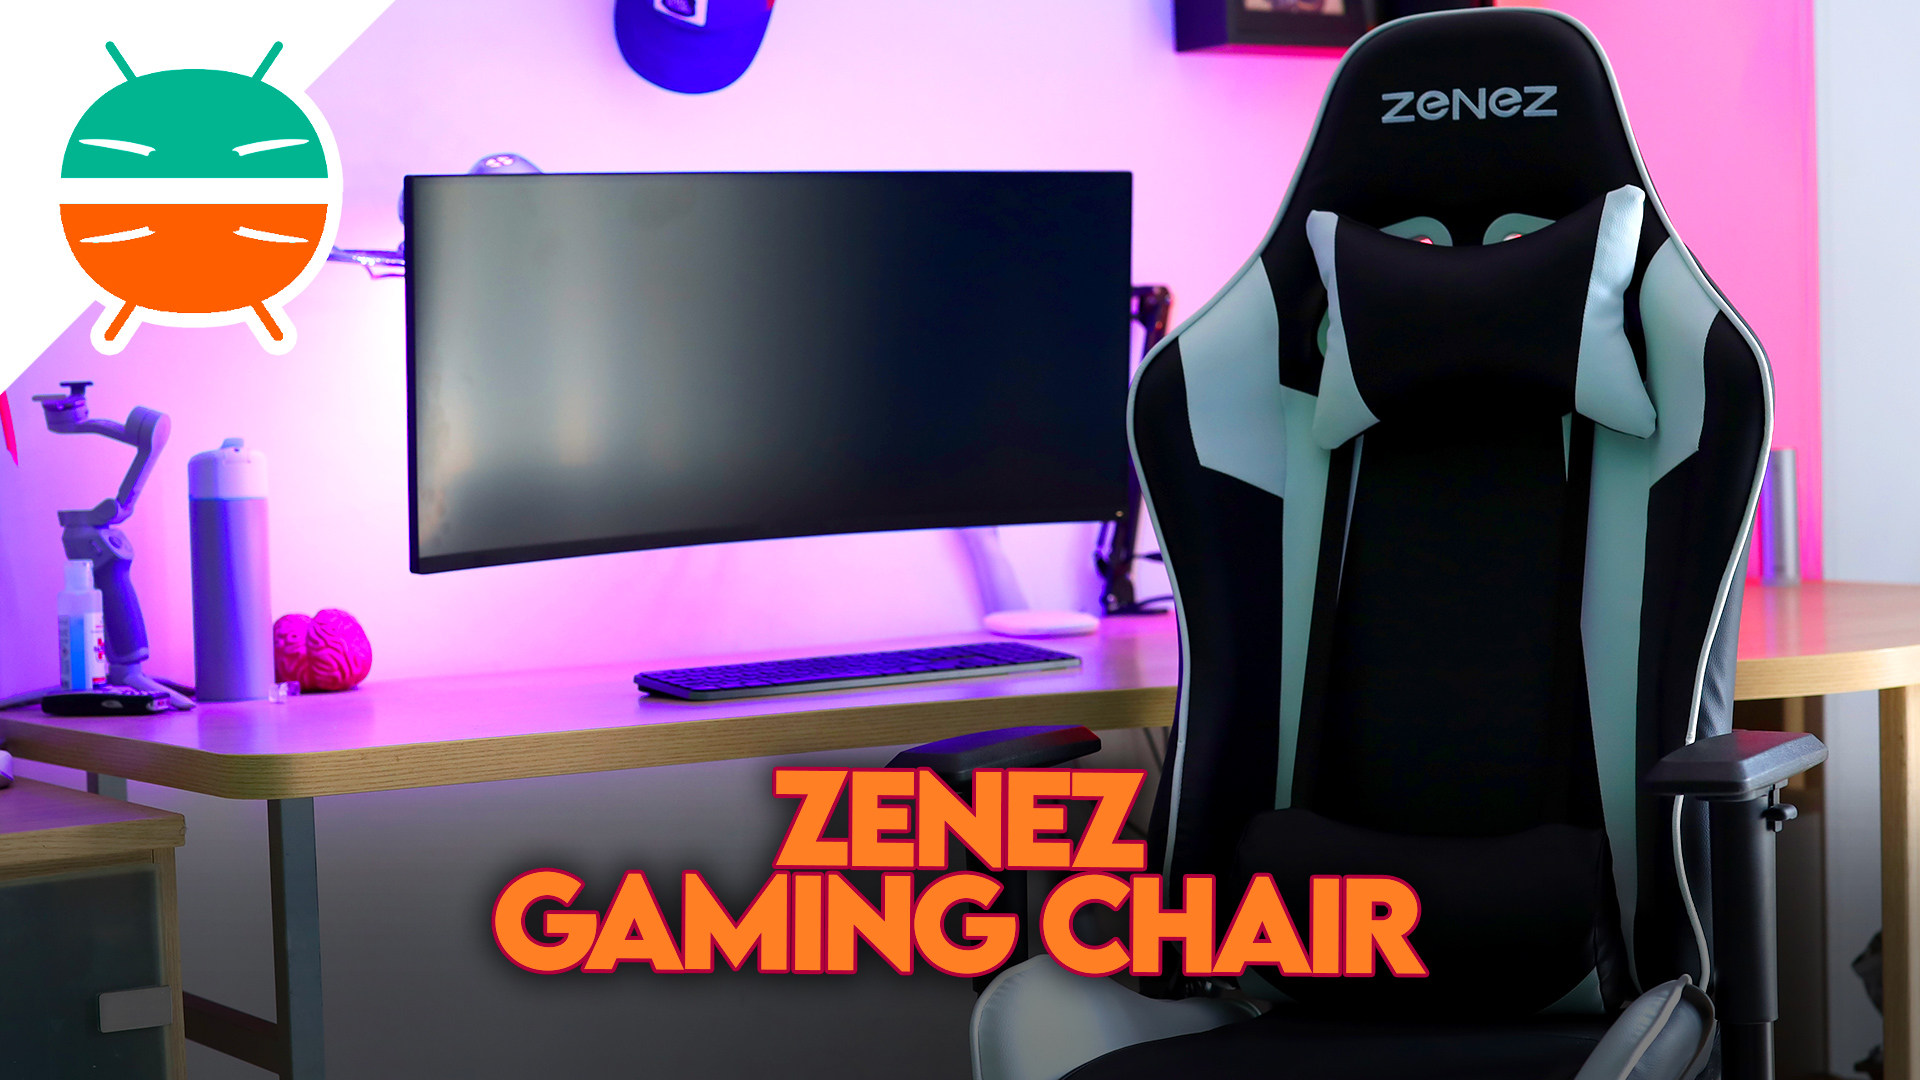 Zenez Gaming Chair Bewertung Dieser Gaming Chair Ist Ein Best Buy Gizchina It